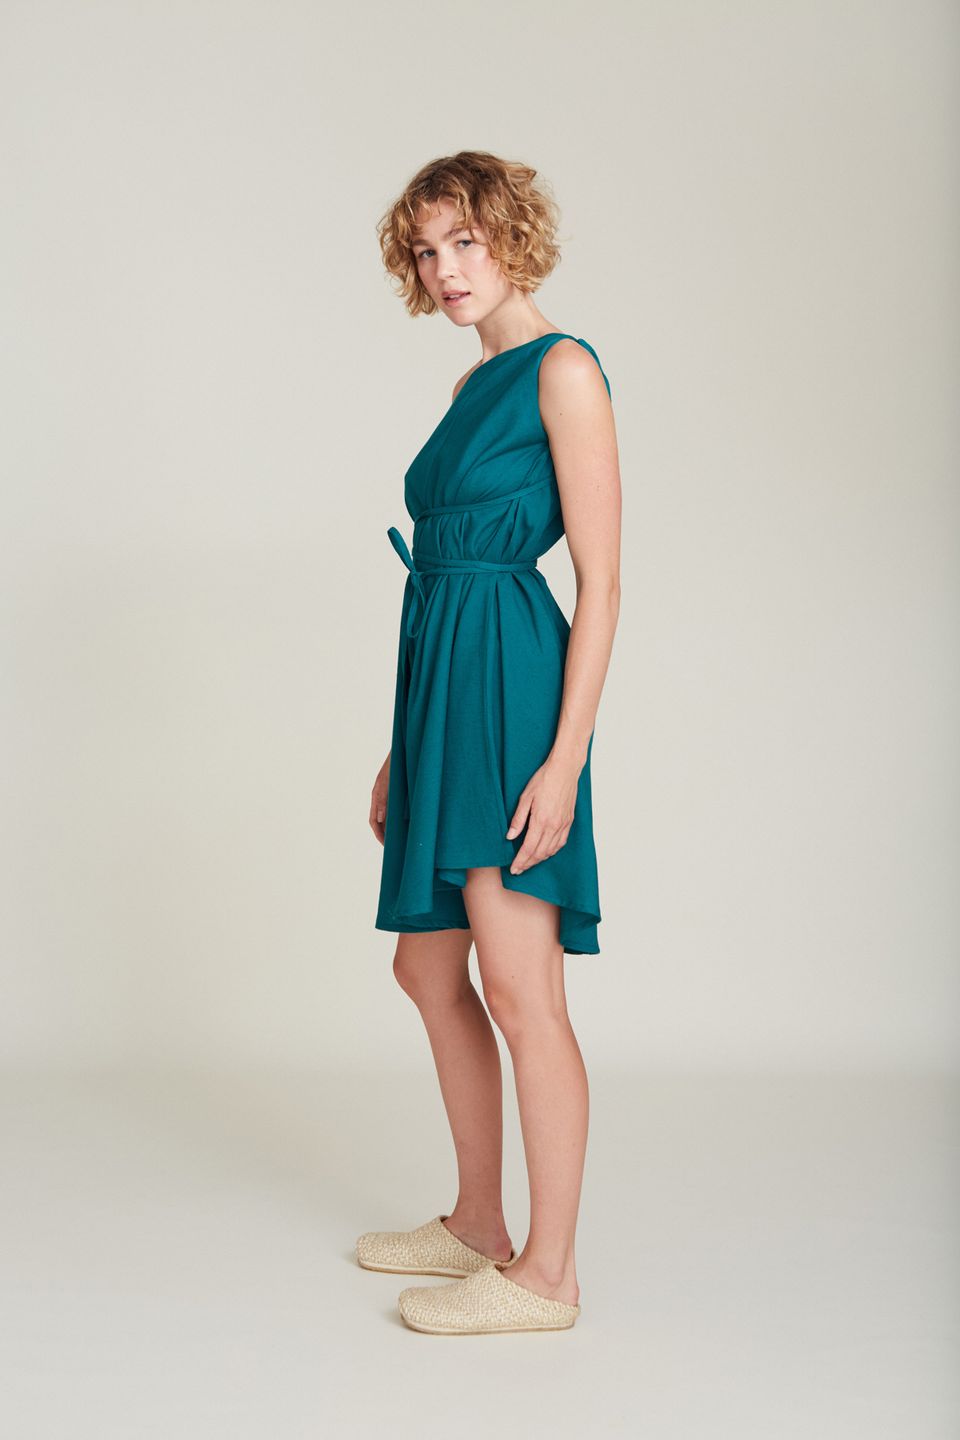 Kurzes Kleid MP Baumwolle / Leinen Emerald Green von SUITE13LAB